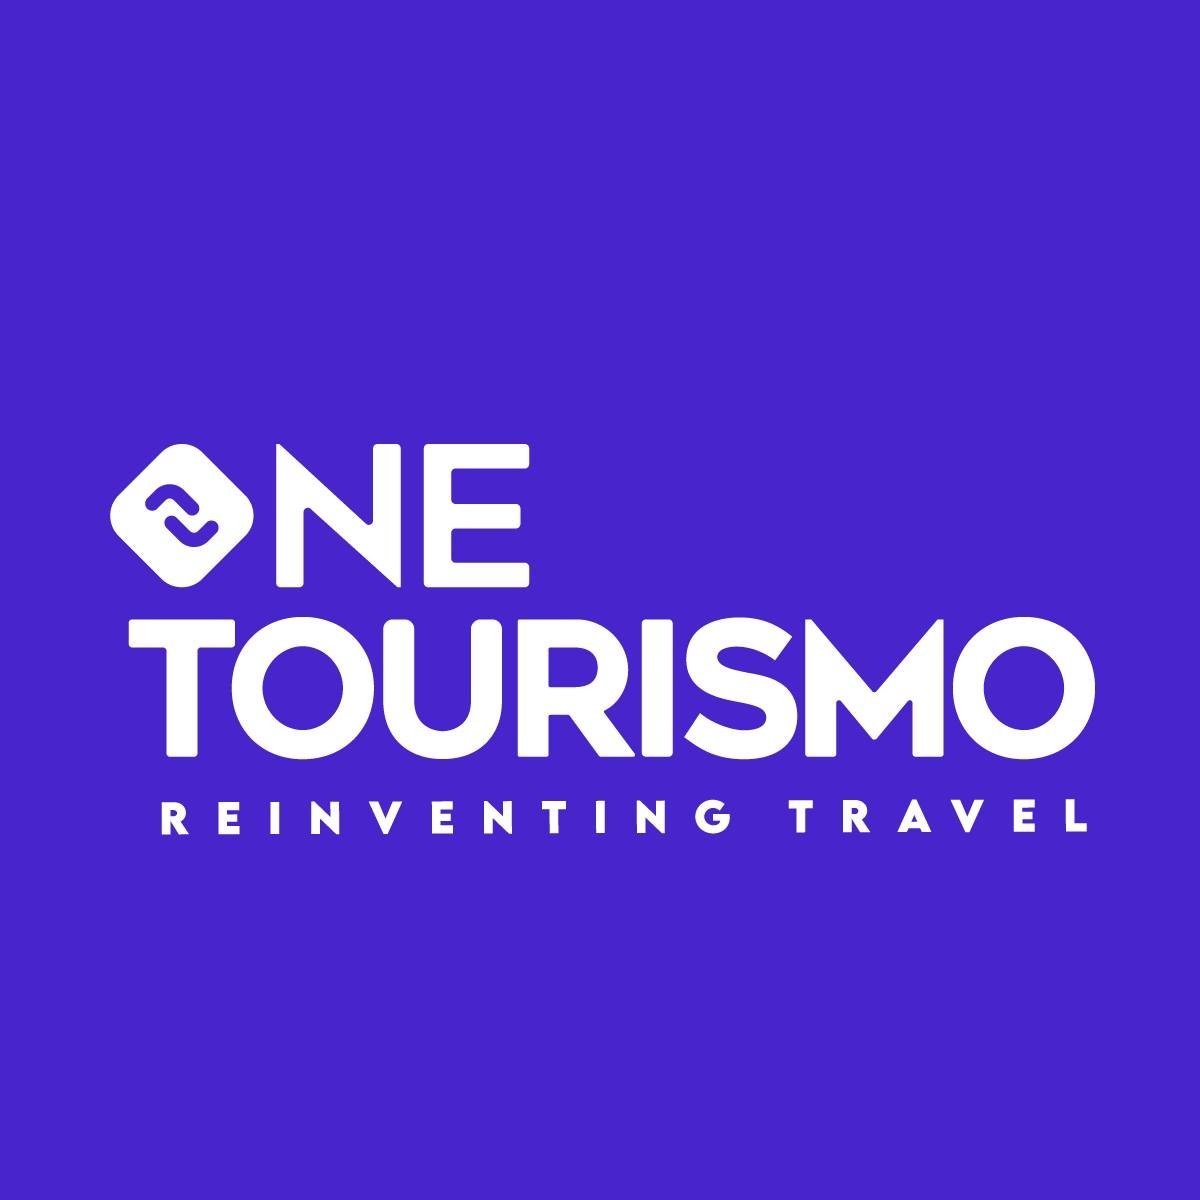 Onetourismo 